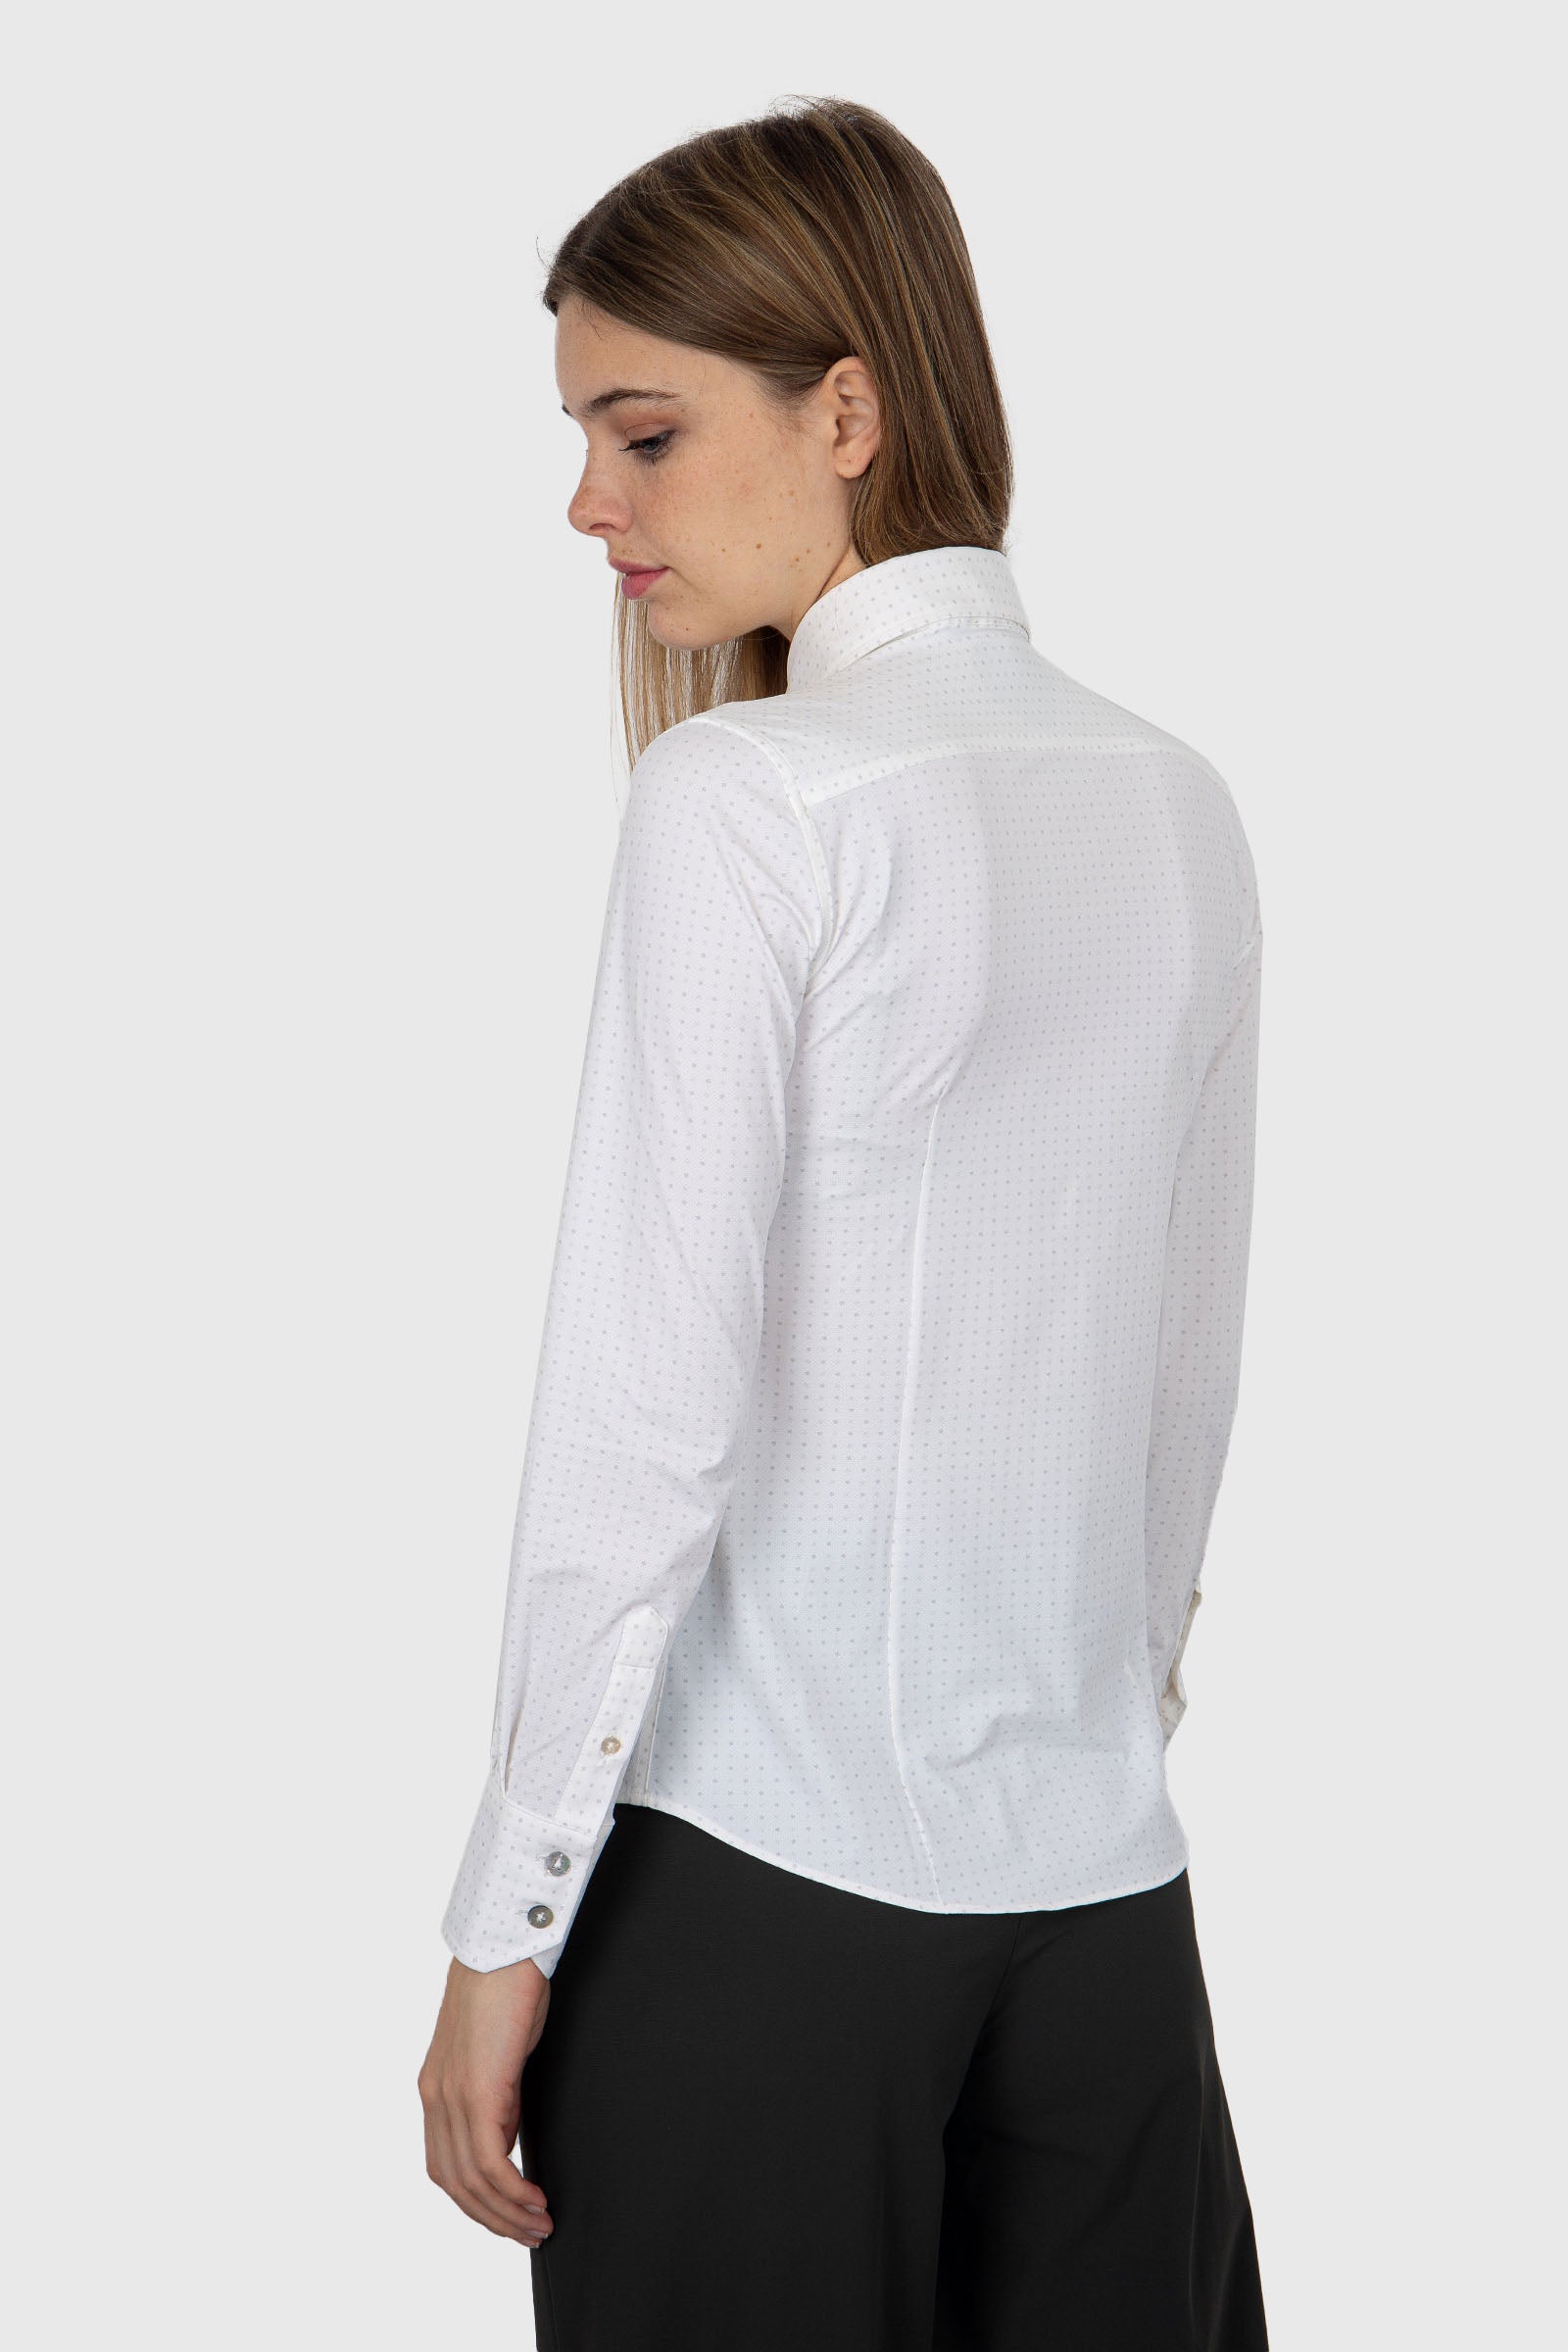 RRD Micro White Synthetic White Shirt - 4